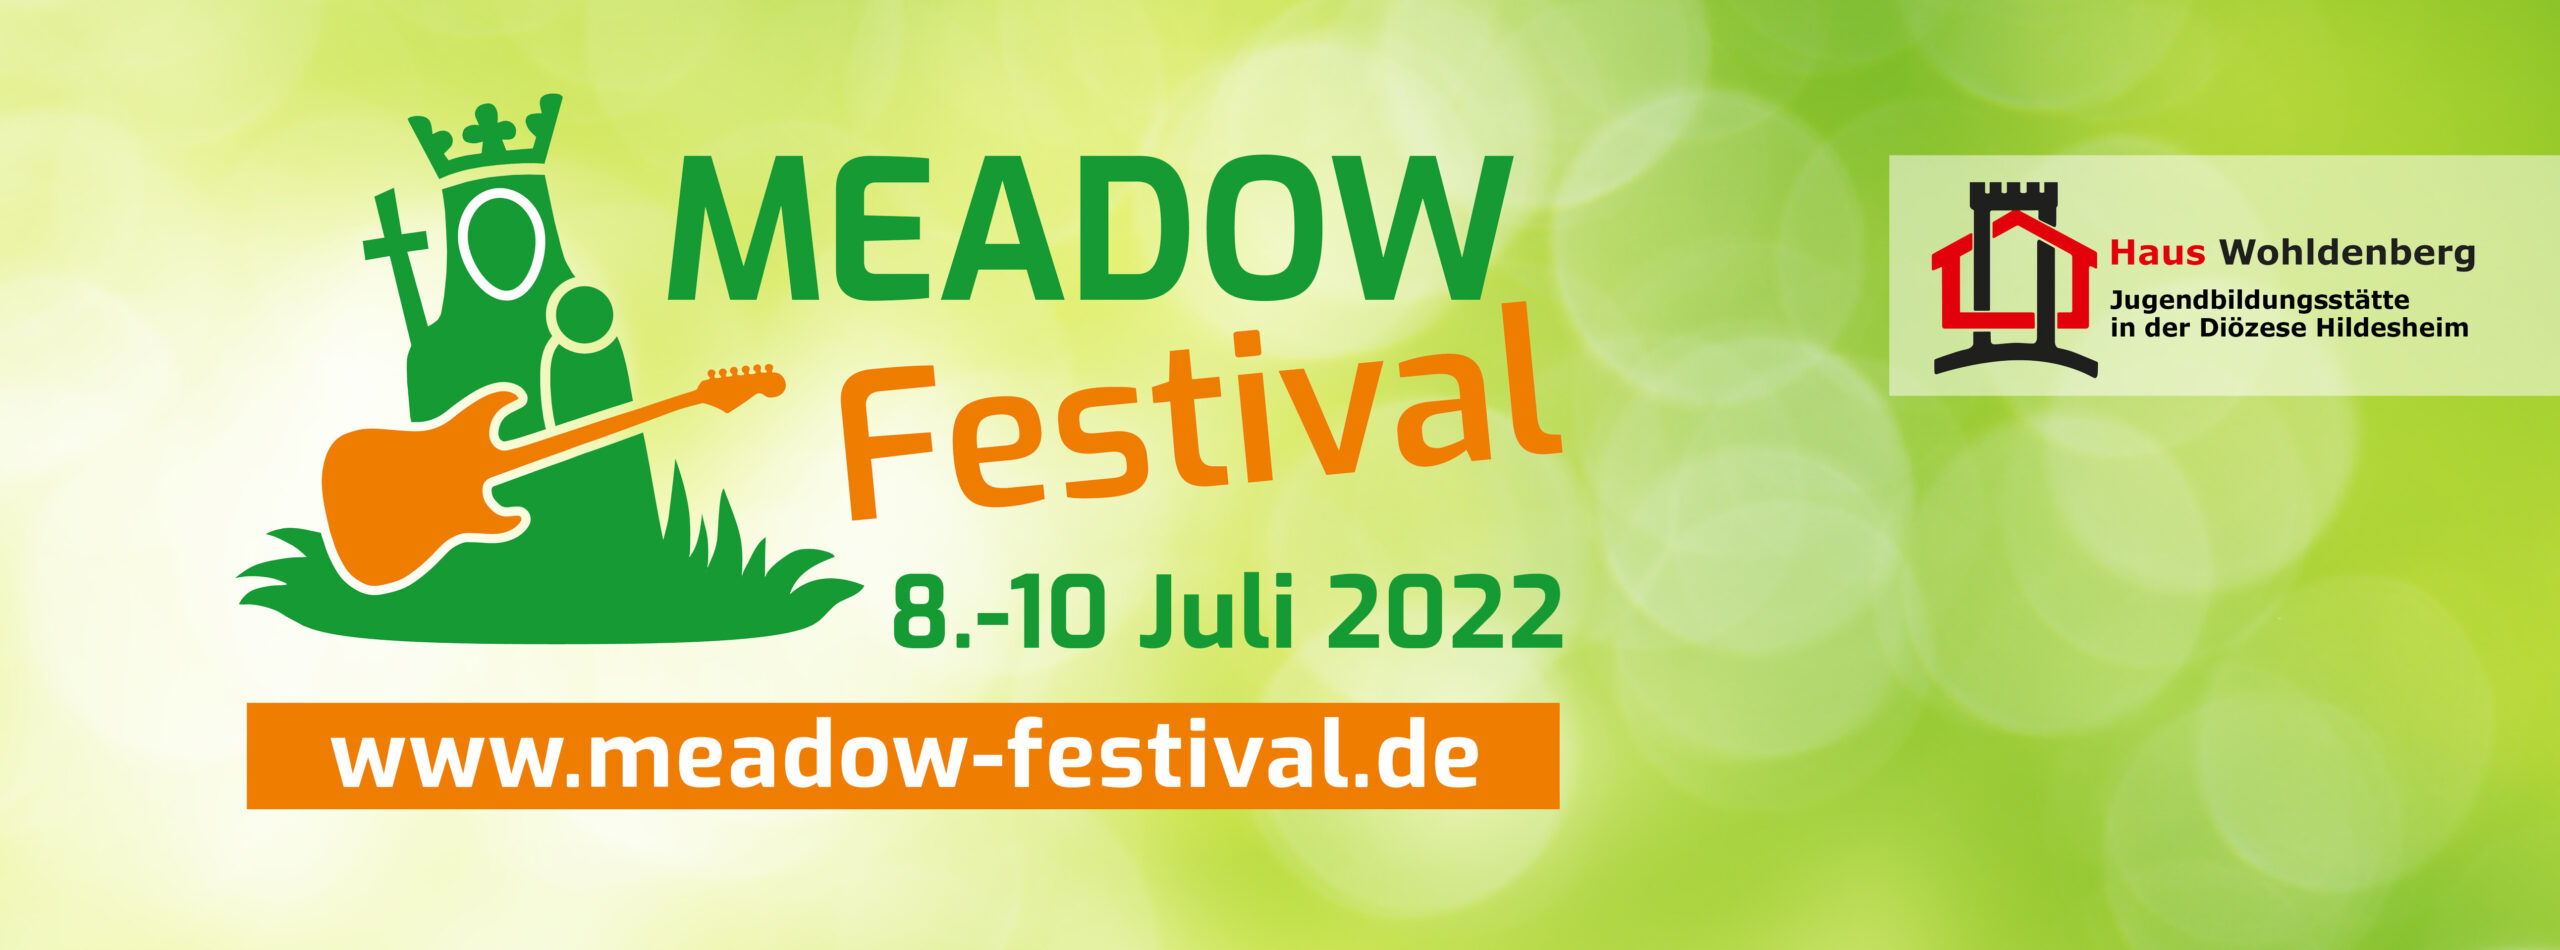 Meadow Festival 2022